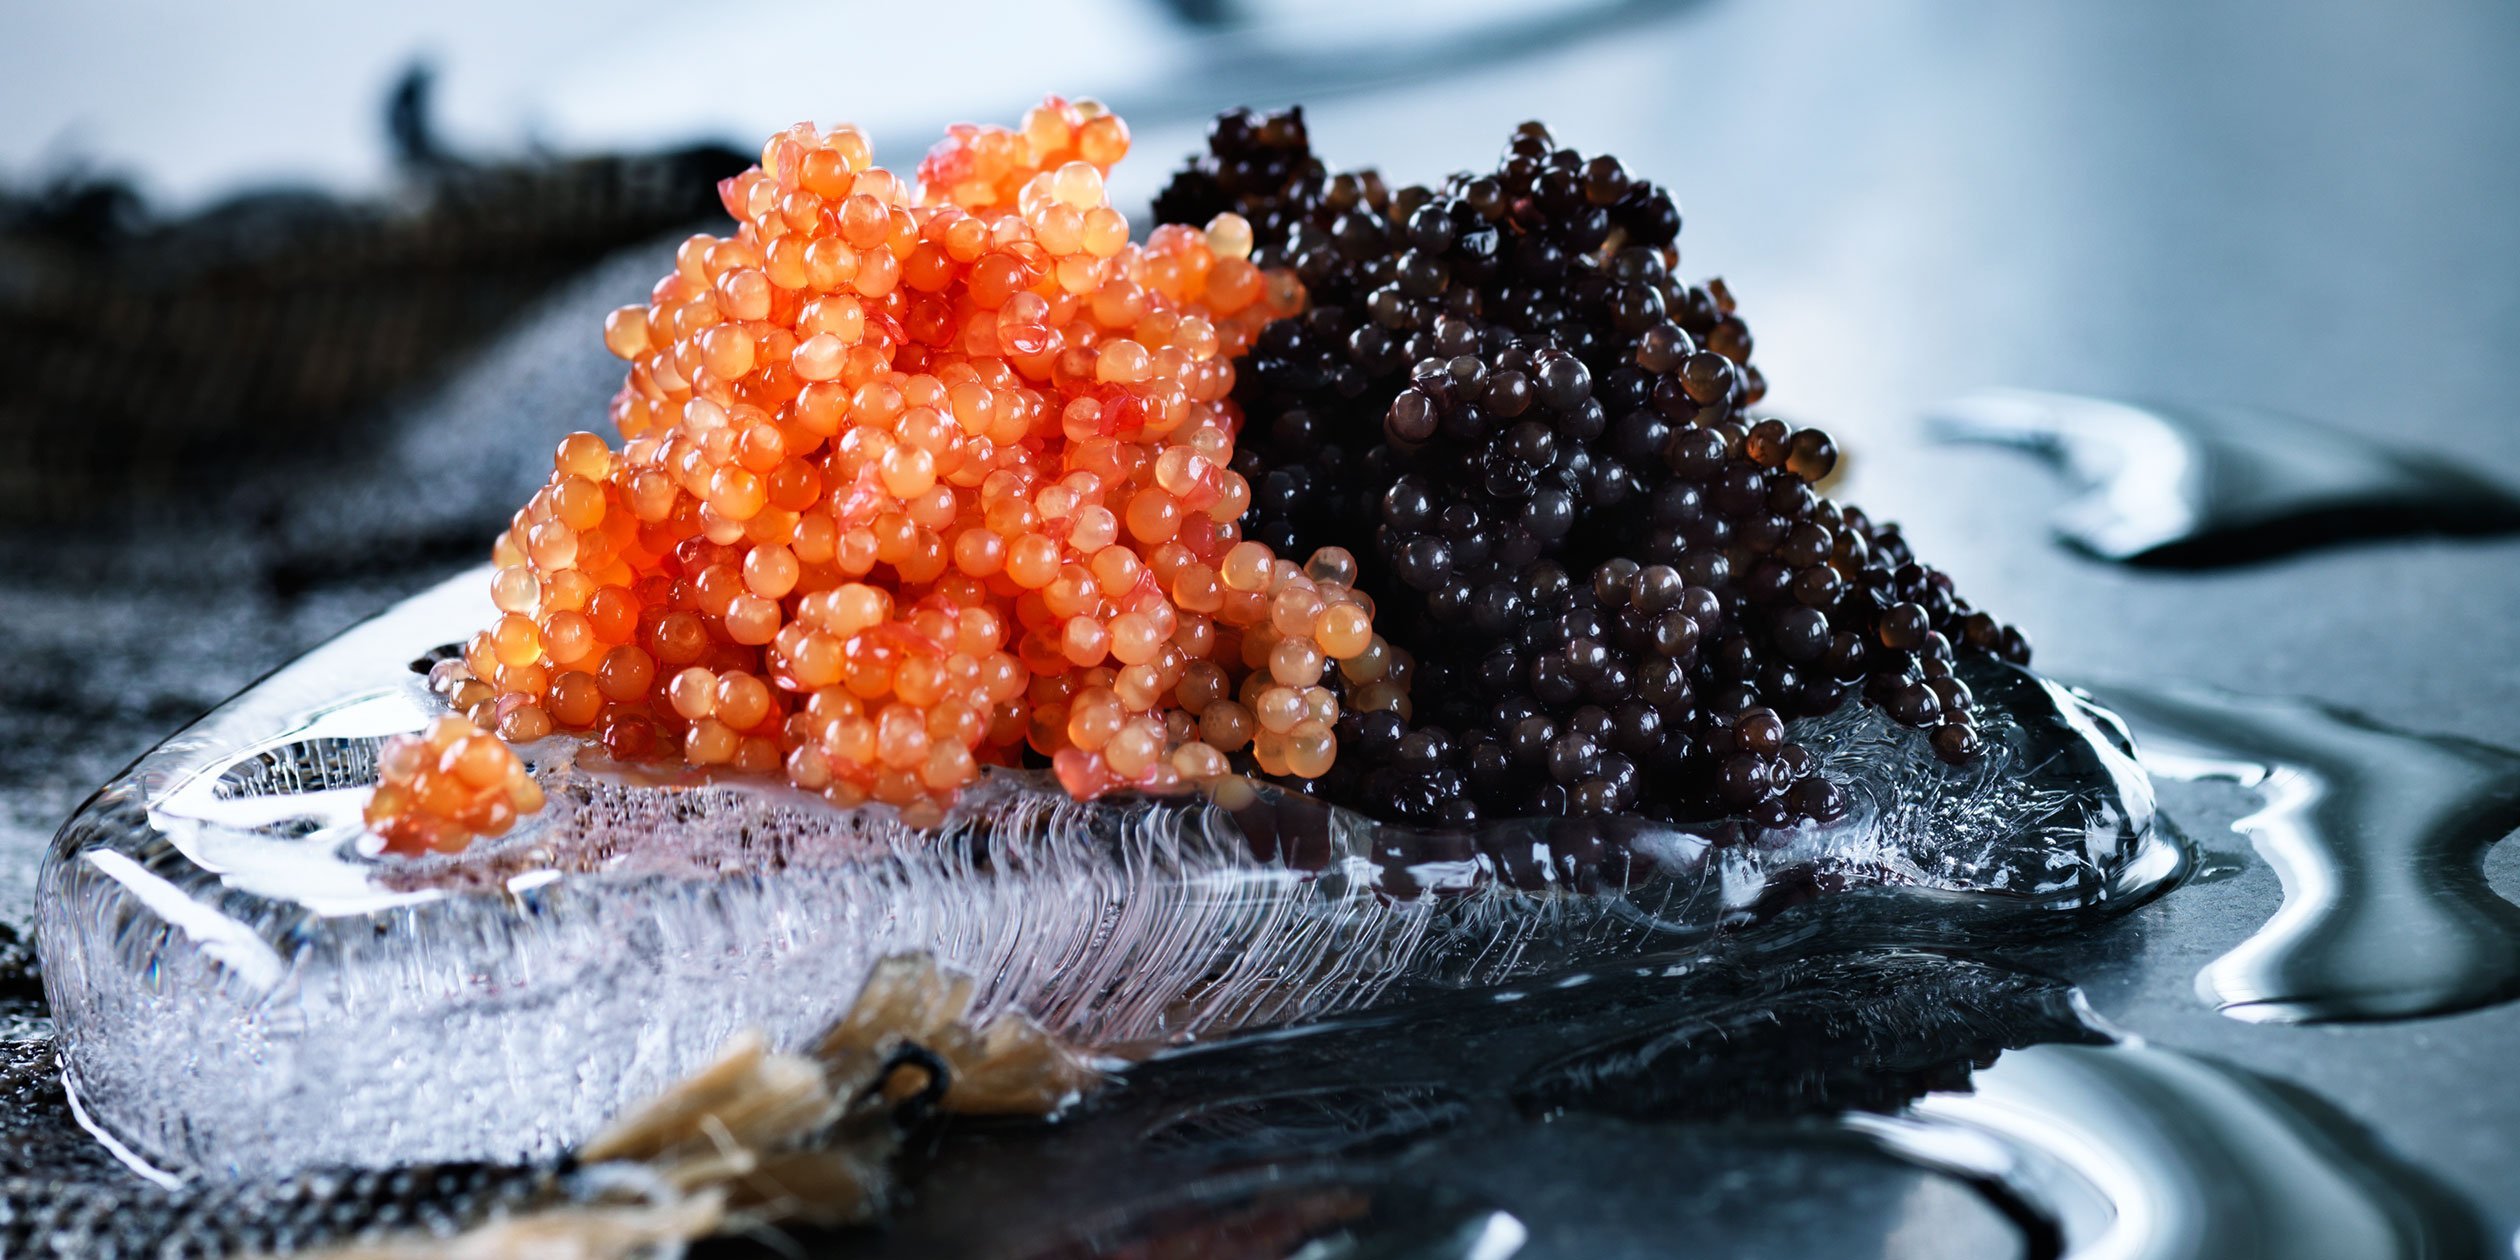 Икорная рыба. Палтус рыба икра. Икра Black Caviar лосося. Икра палтуса красная. Икра палтуса черная и икра осетровая.